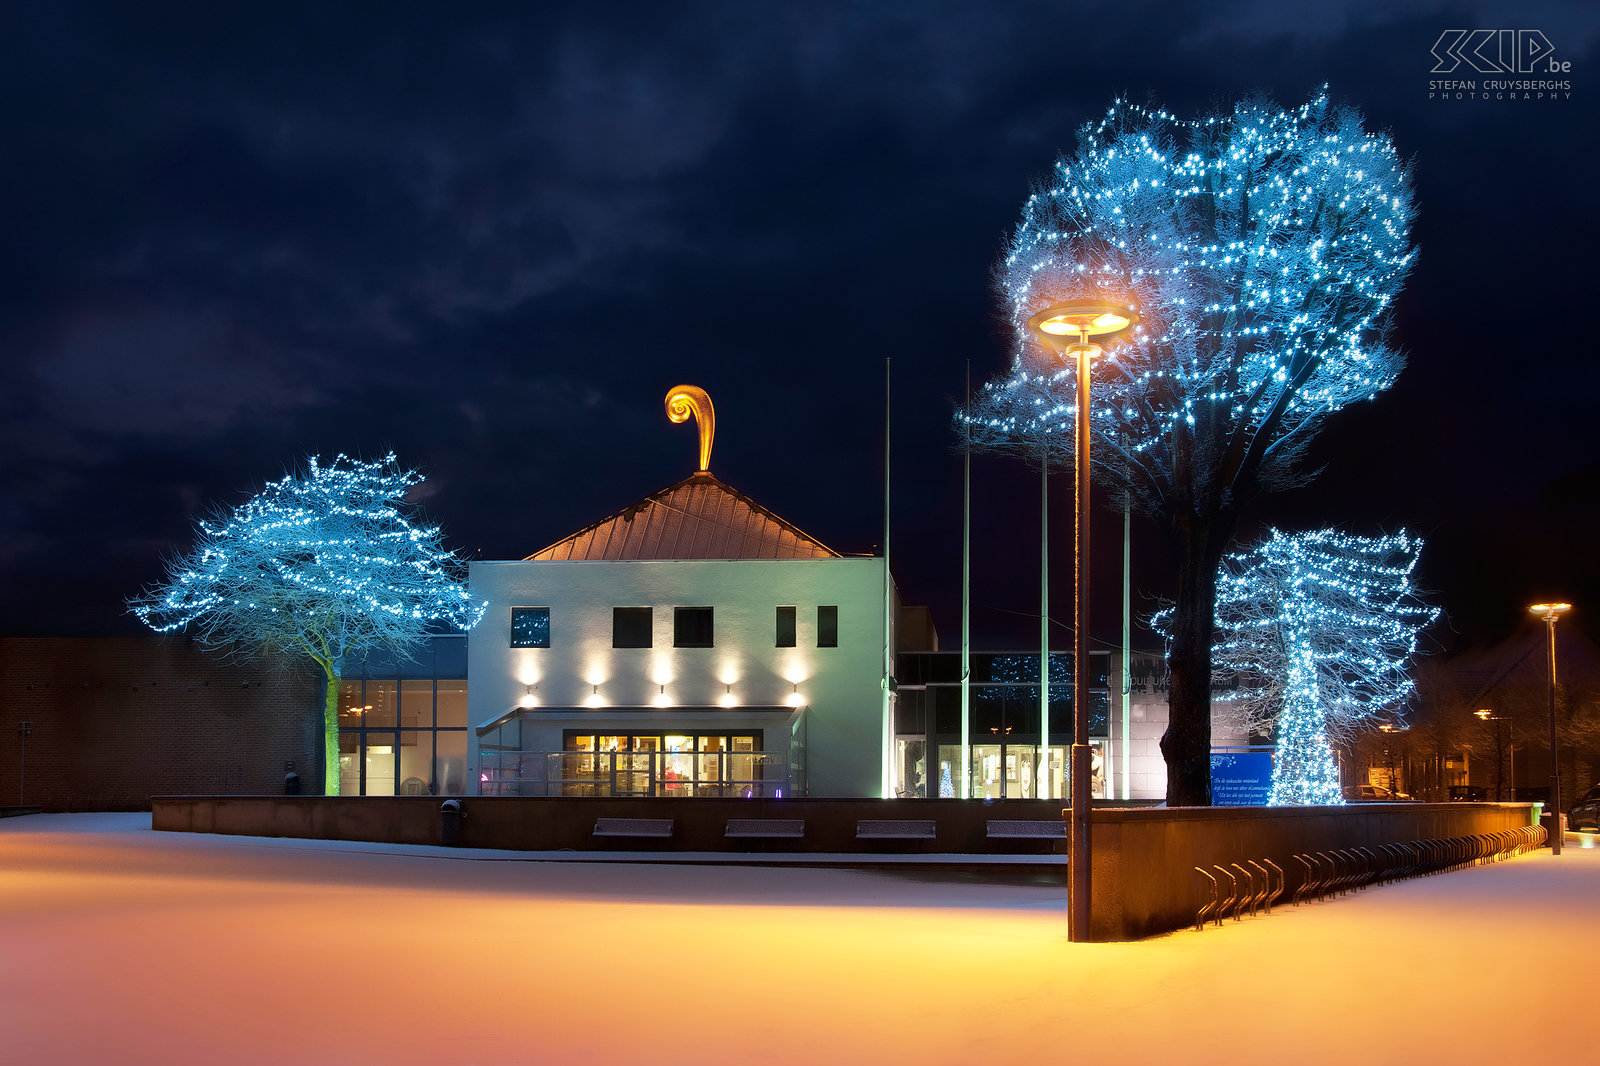 Lommel by night - CC Adelberg Deze foto van het culturele centrum De Adelberg in mijn thuisstad Lommel werd gemaakt vlak na een sneeuwbui tijdens de kerstperiode. Op het dak van het gebouw prijkt een gouden krul, een kunstwerk van Luk Van Soom. Stefan Cruysberghs